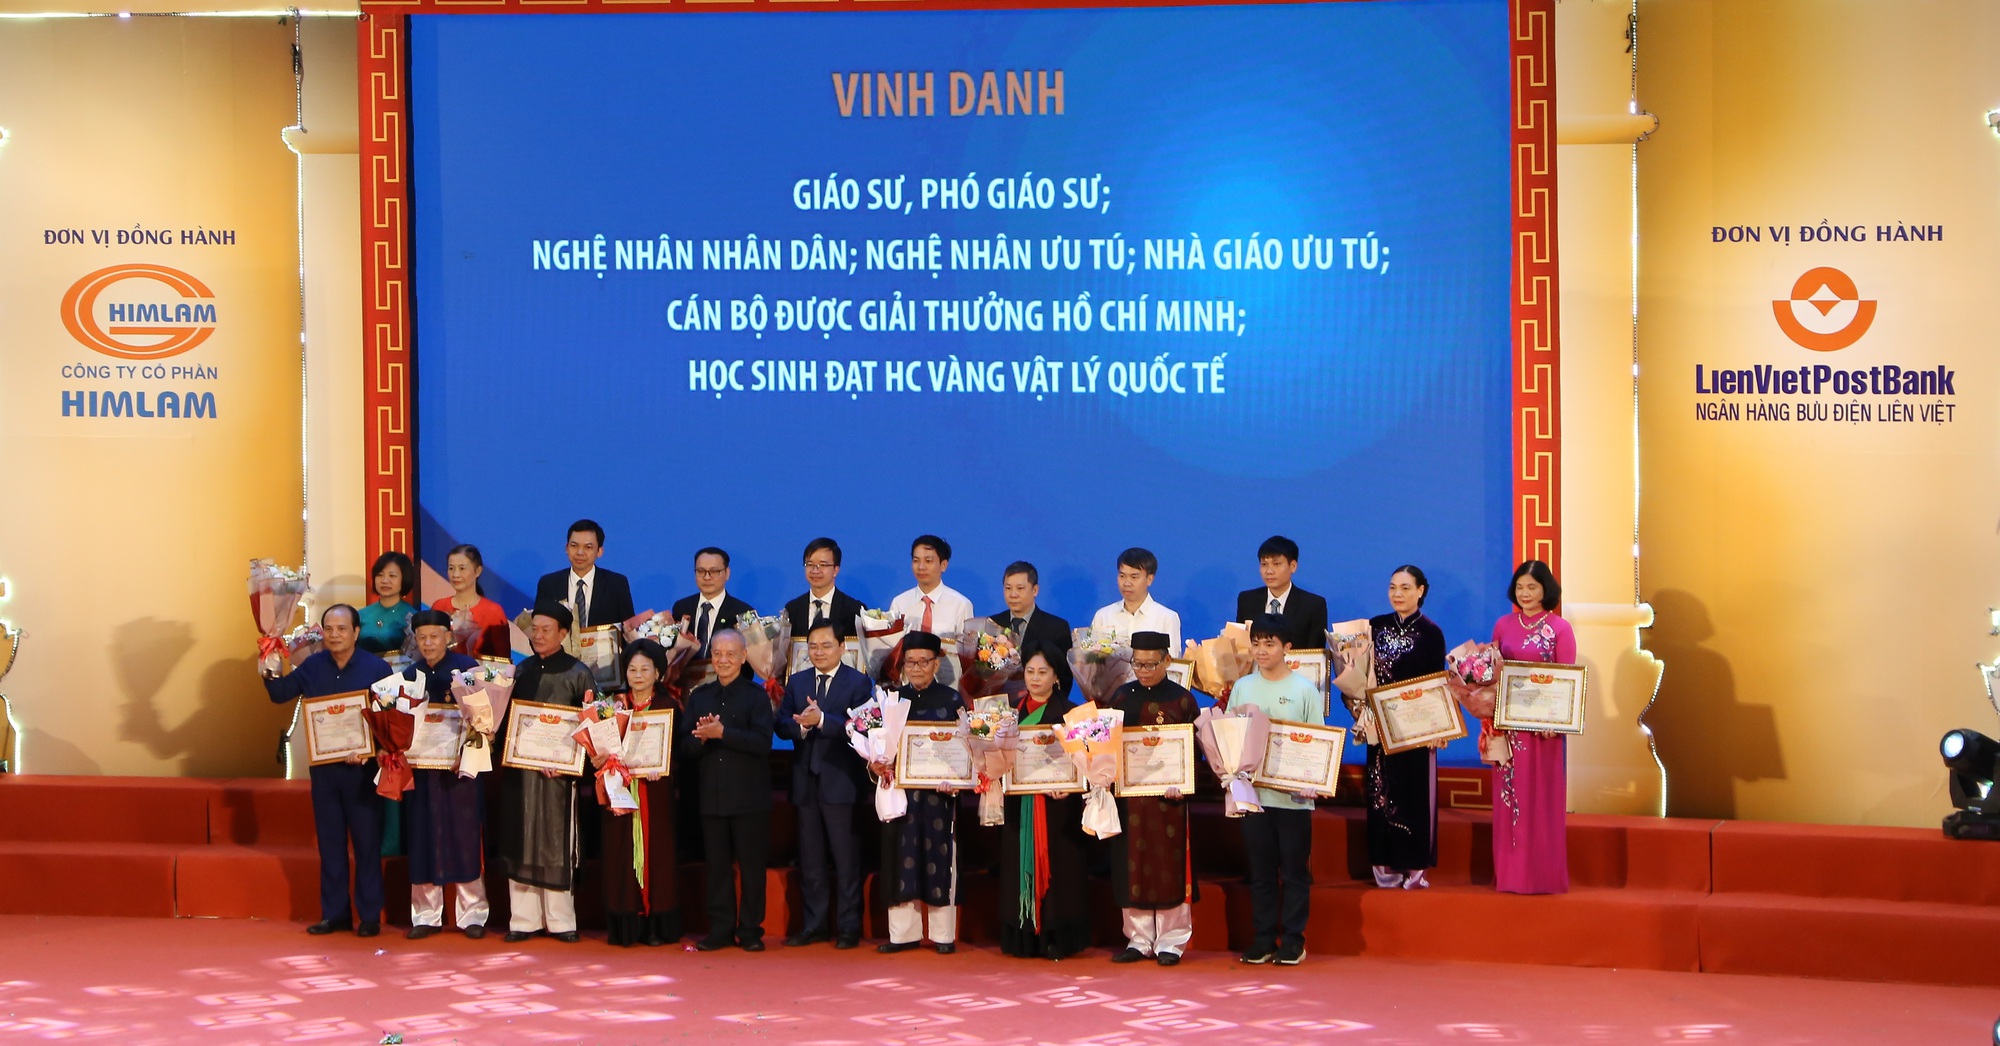 Quỹ Khuyến học, khuyến tài Phạm Văn Trà trao giải thưởng hơn 3 tỷ đồng cho các tài năng tiêu biểu của tỉnh Bắc Ninh năm 2022 - Ảnh 1.